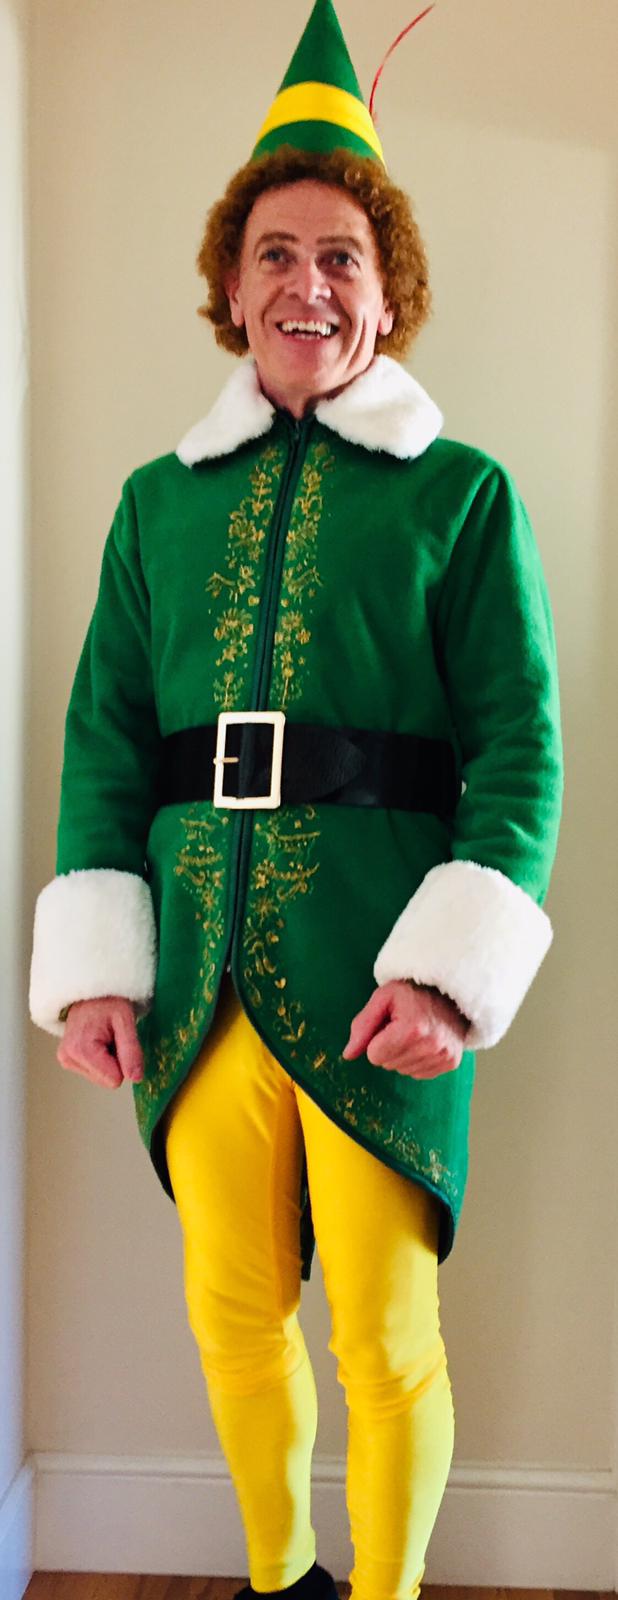 buddy the elf costume uk